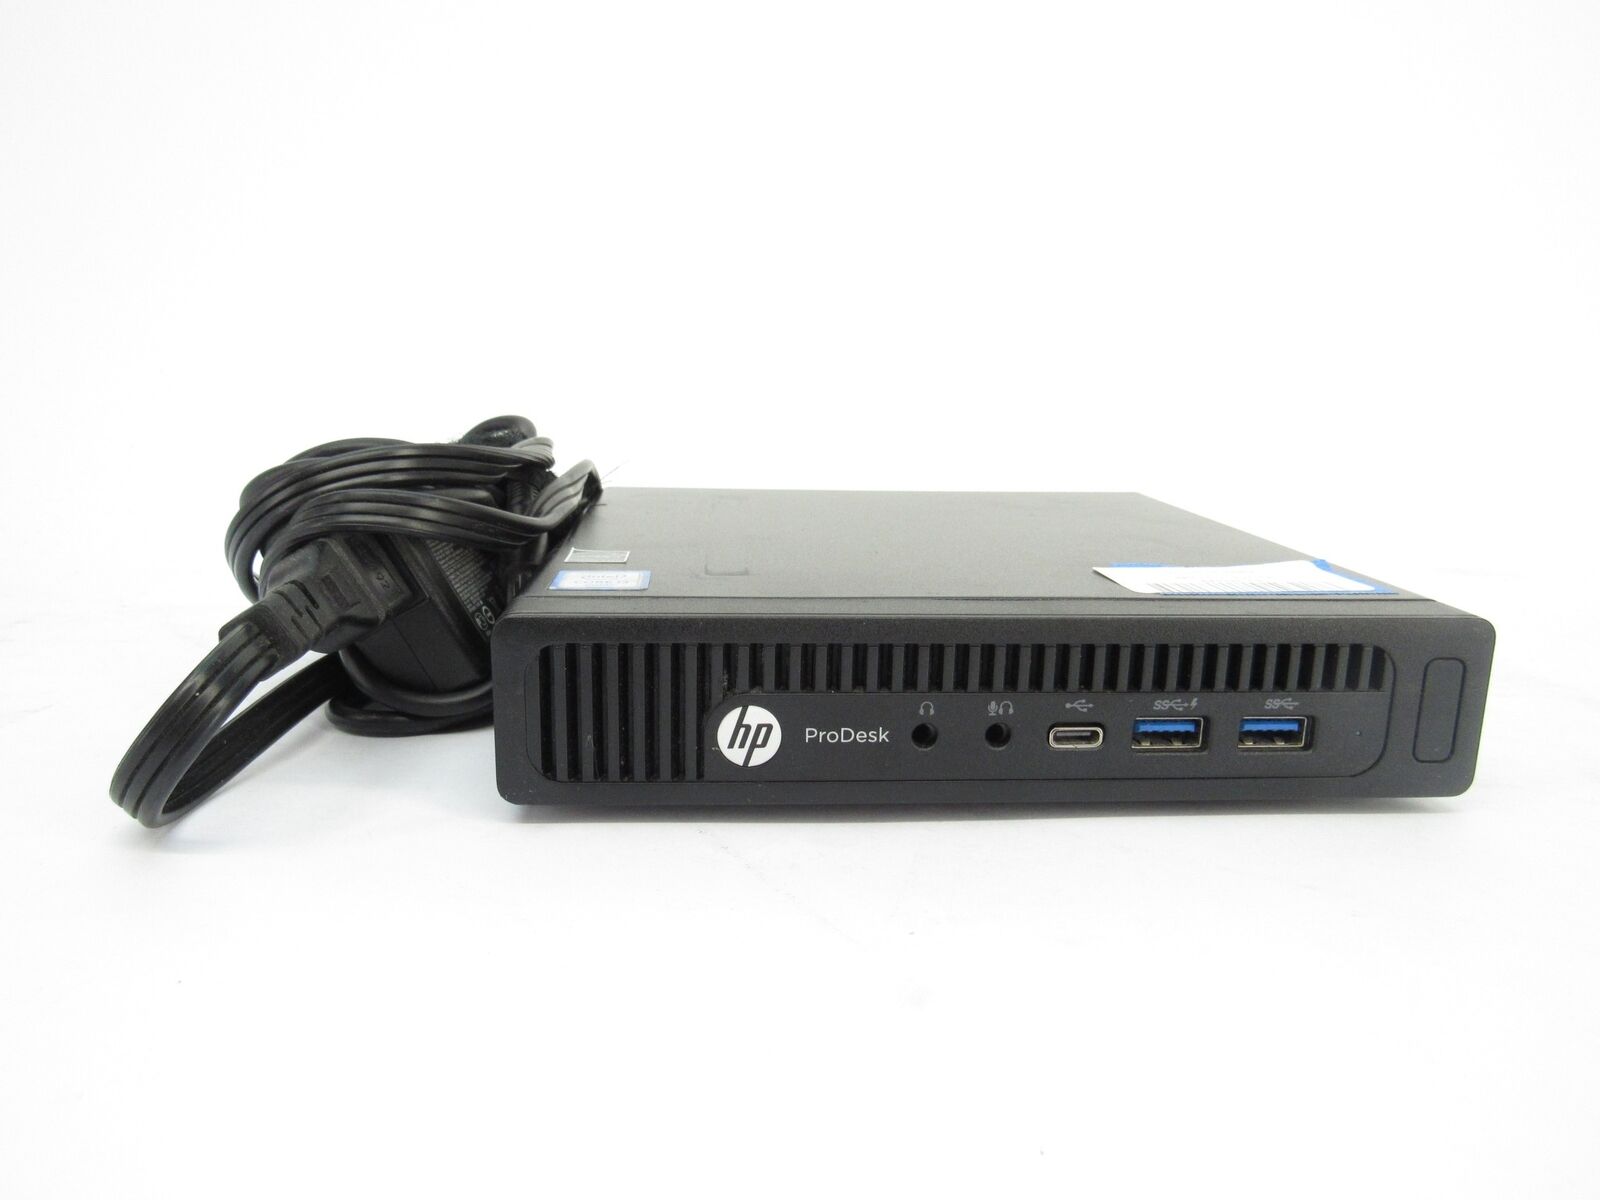 HP ProDesk 600 G2 Mini i3-6100T 3.20 GHz 4GB RAM 120GB SATA SSD Desktops C4